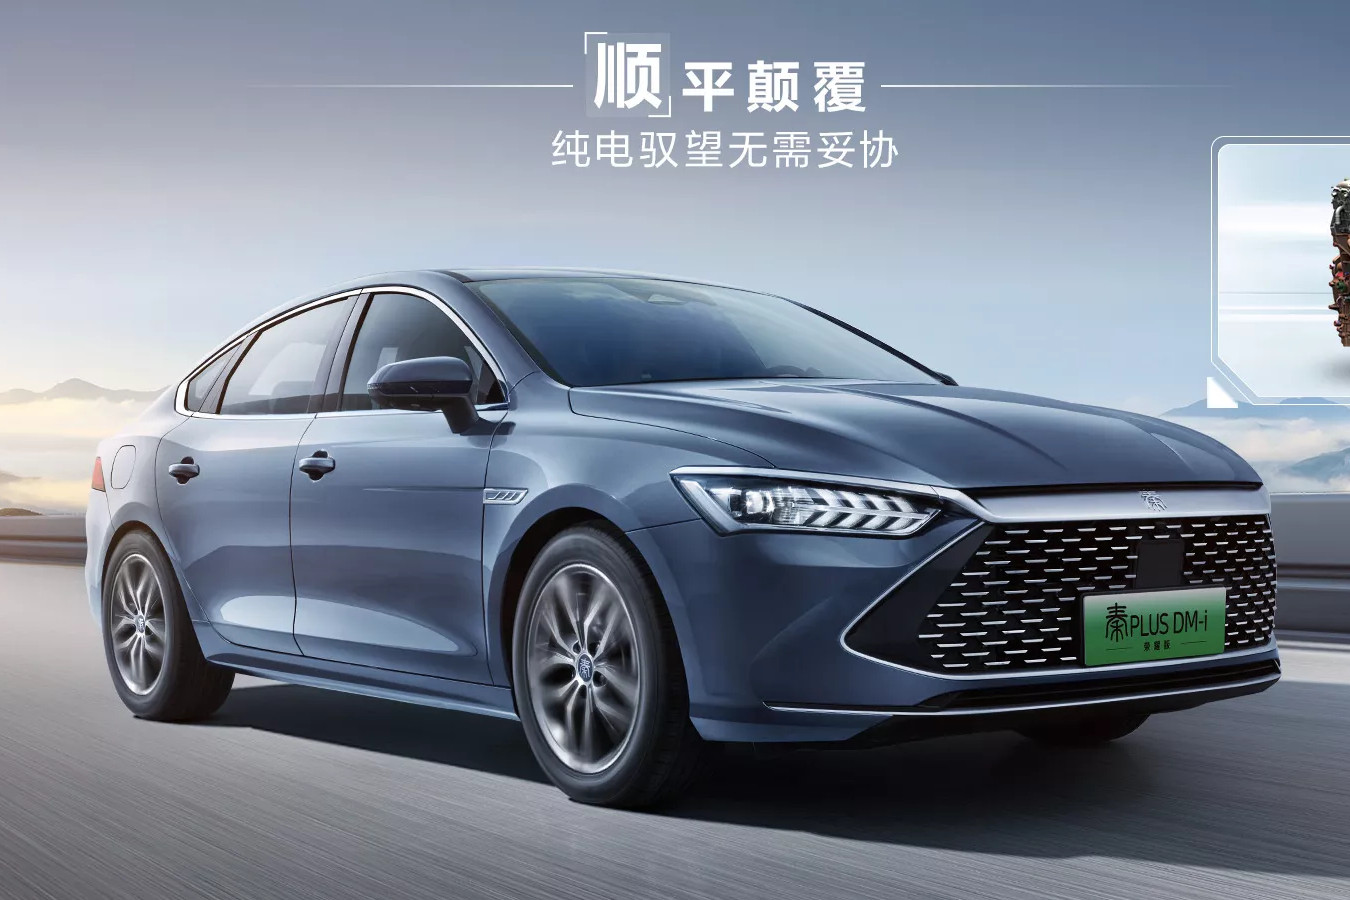 View - Giá xe sedan BYD Qin của Trung Quốc chỉ 270 triệu